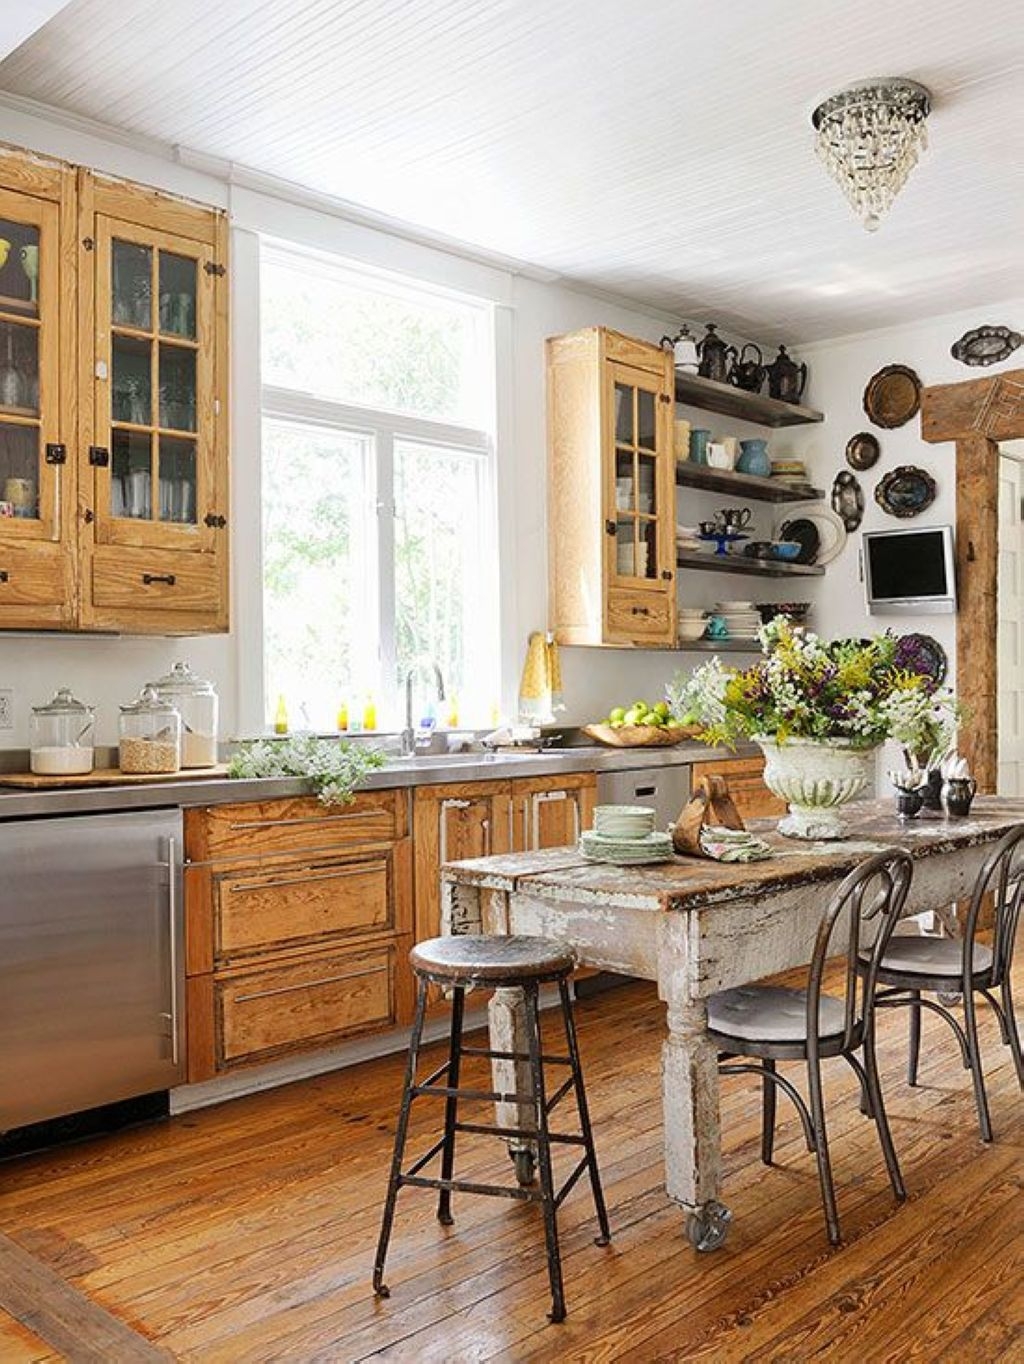 31 DIY Ideas to Add Rustic Farmhouse Feel to your Kitchen - GODIYGO.COM